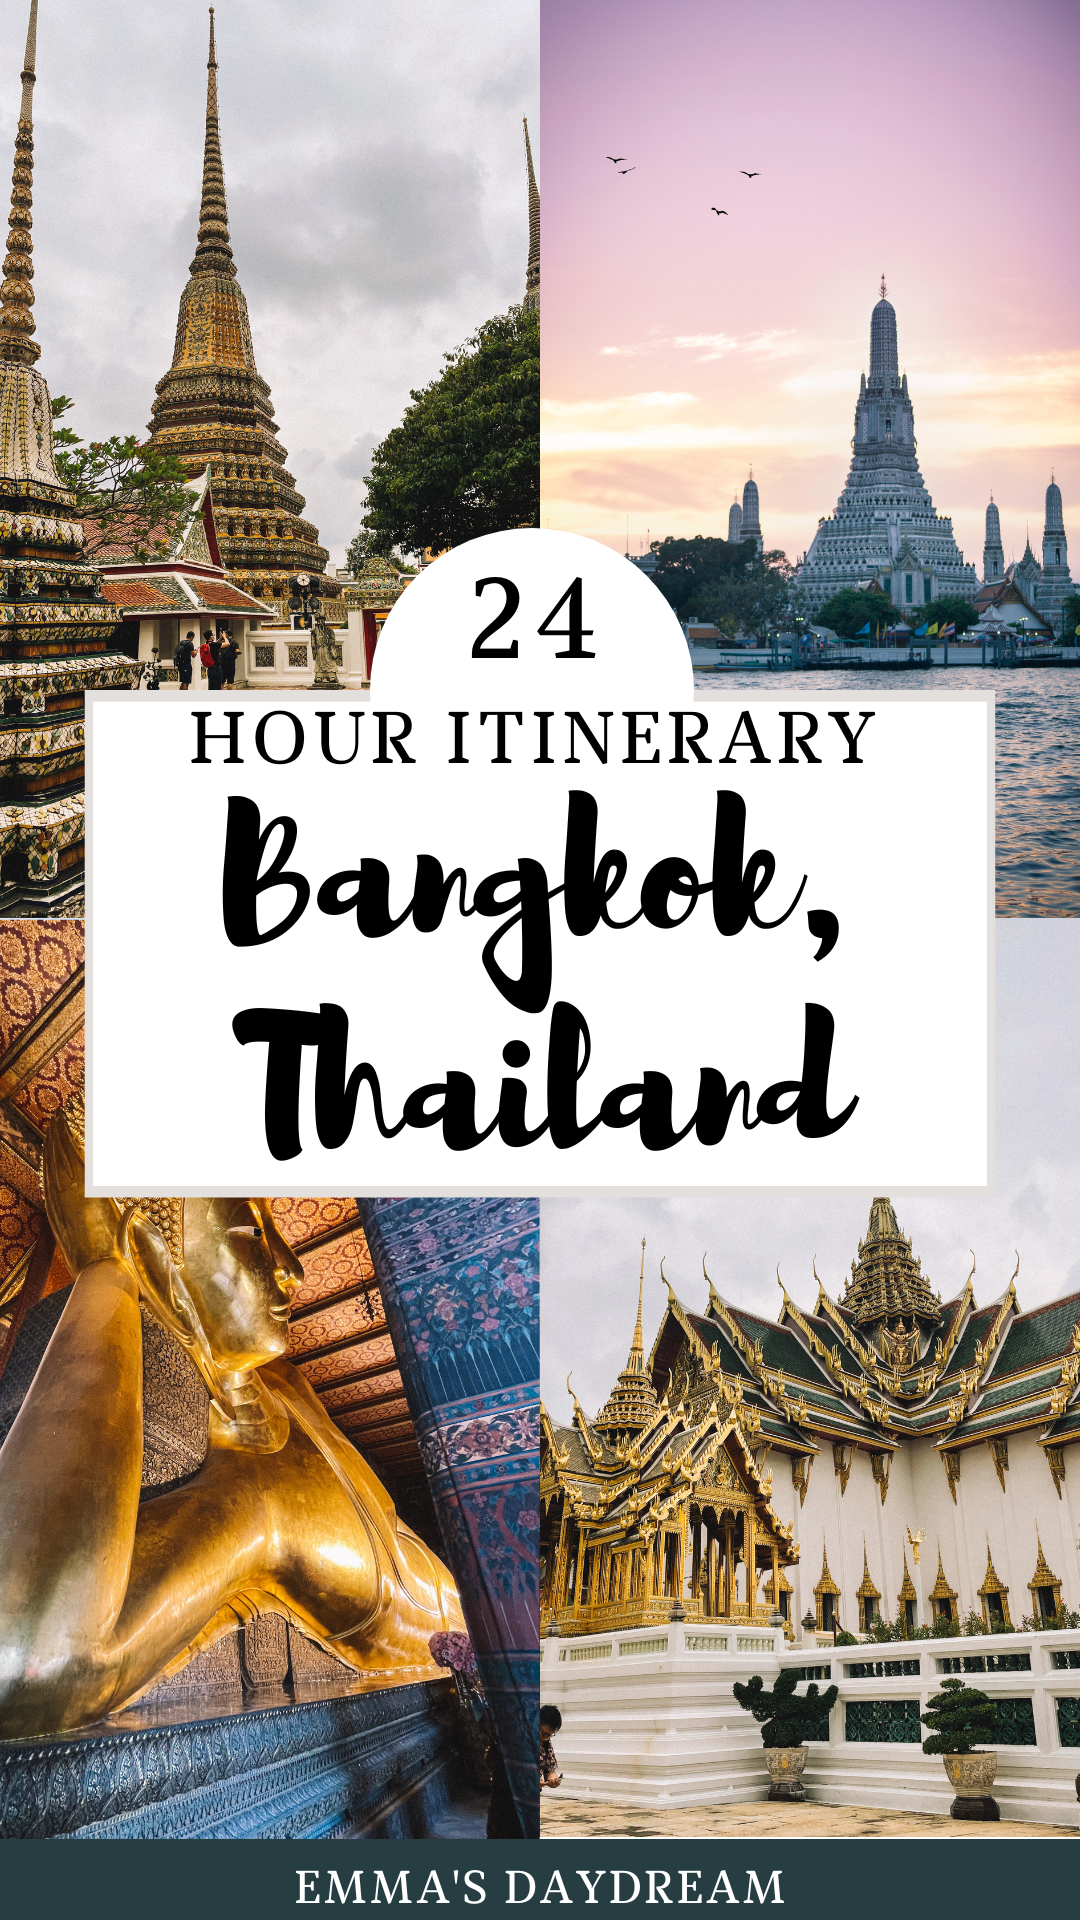 24 hours in Bangkok